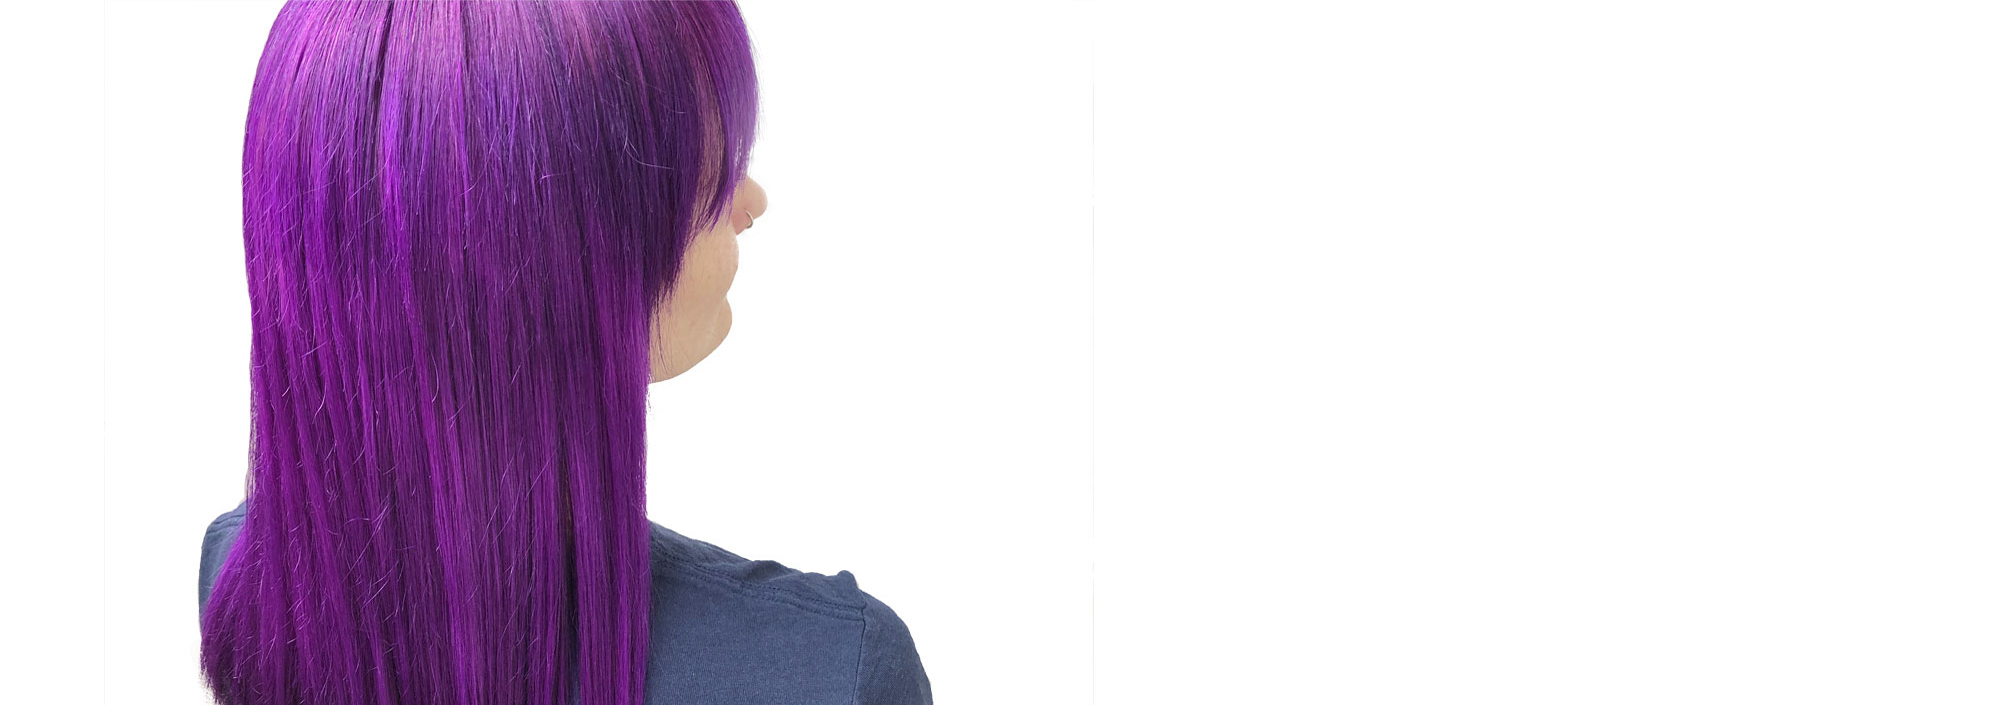 bright purple hair